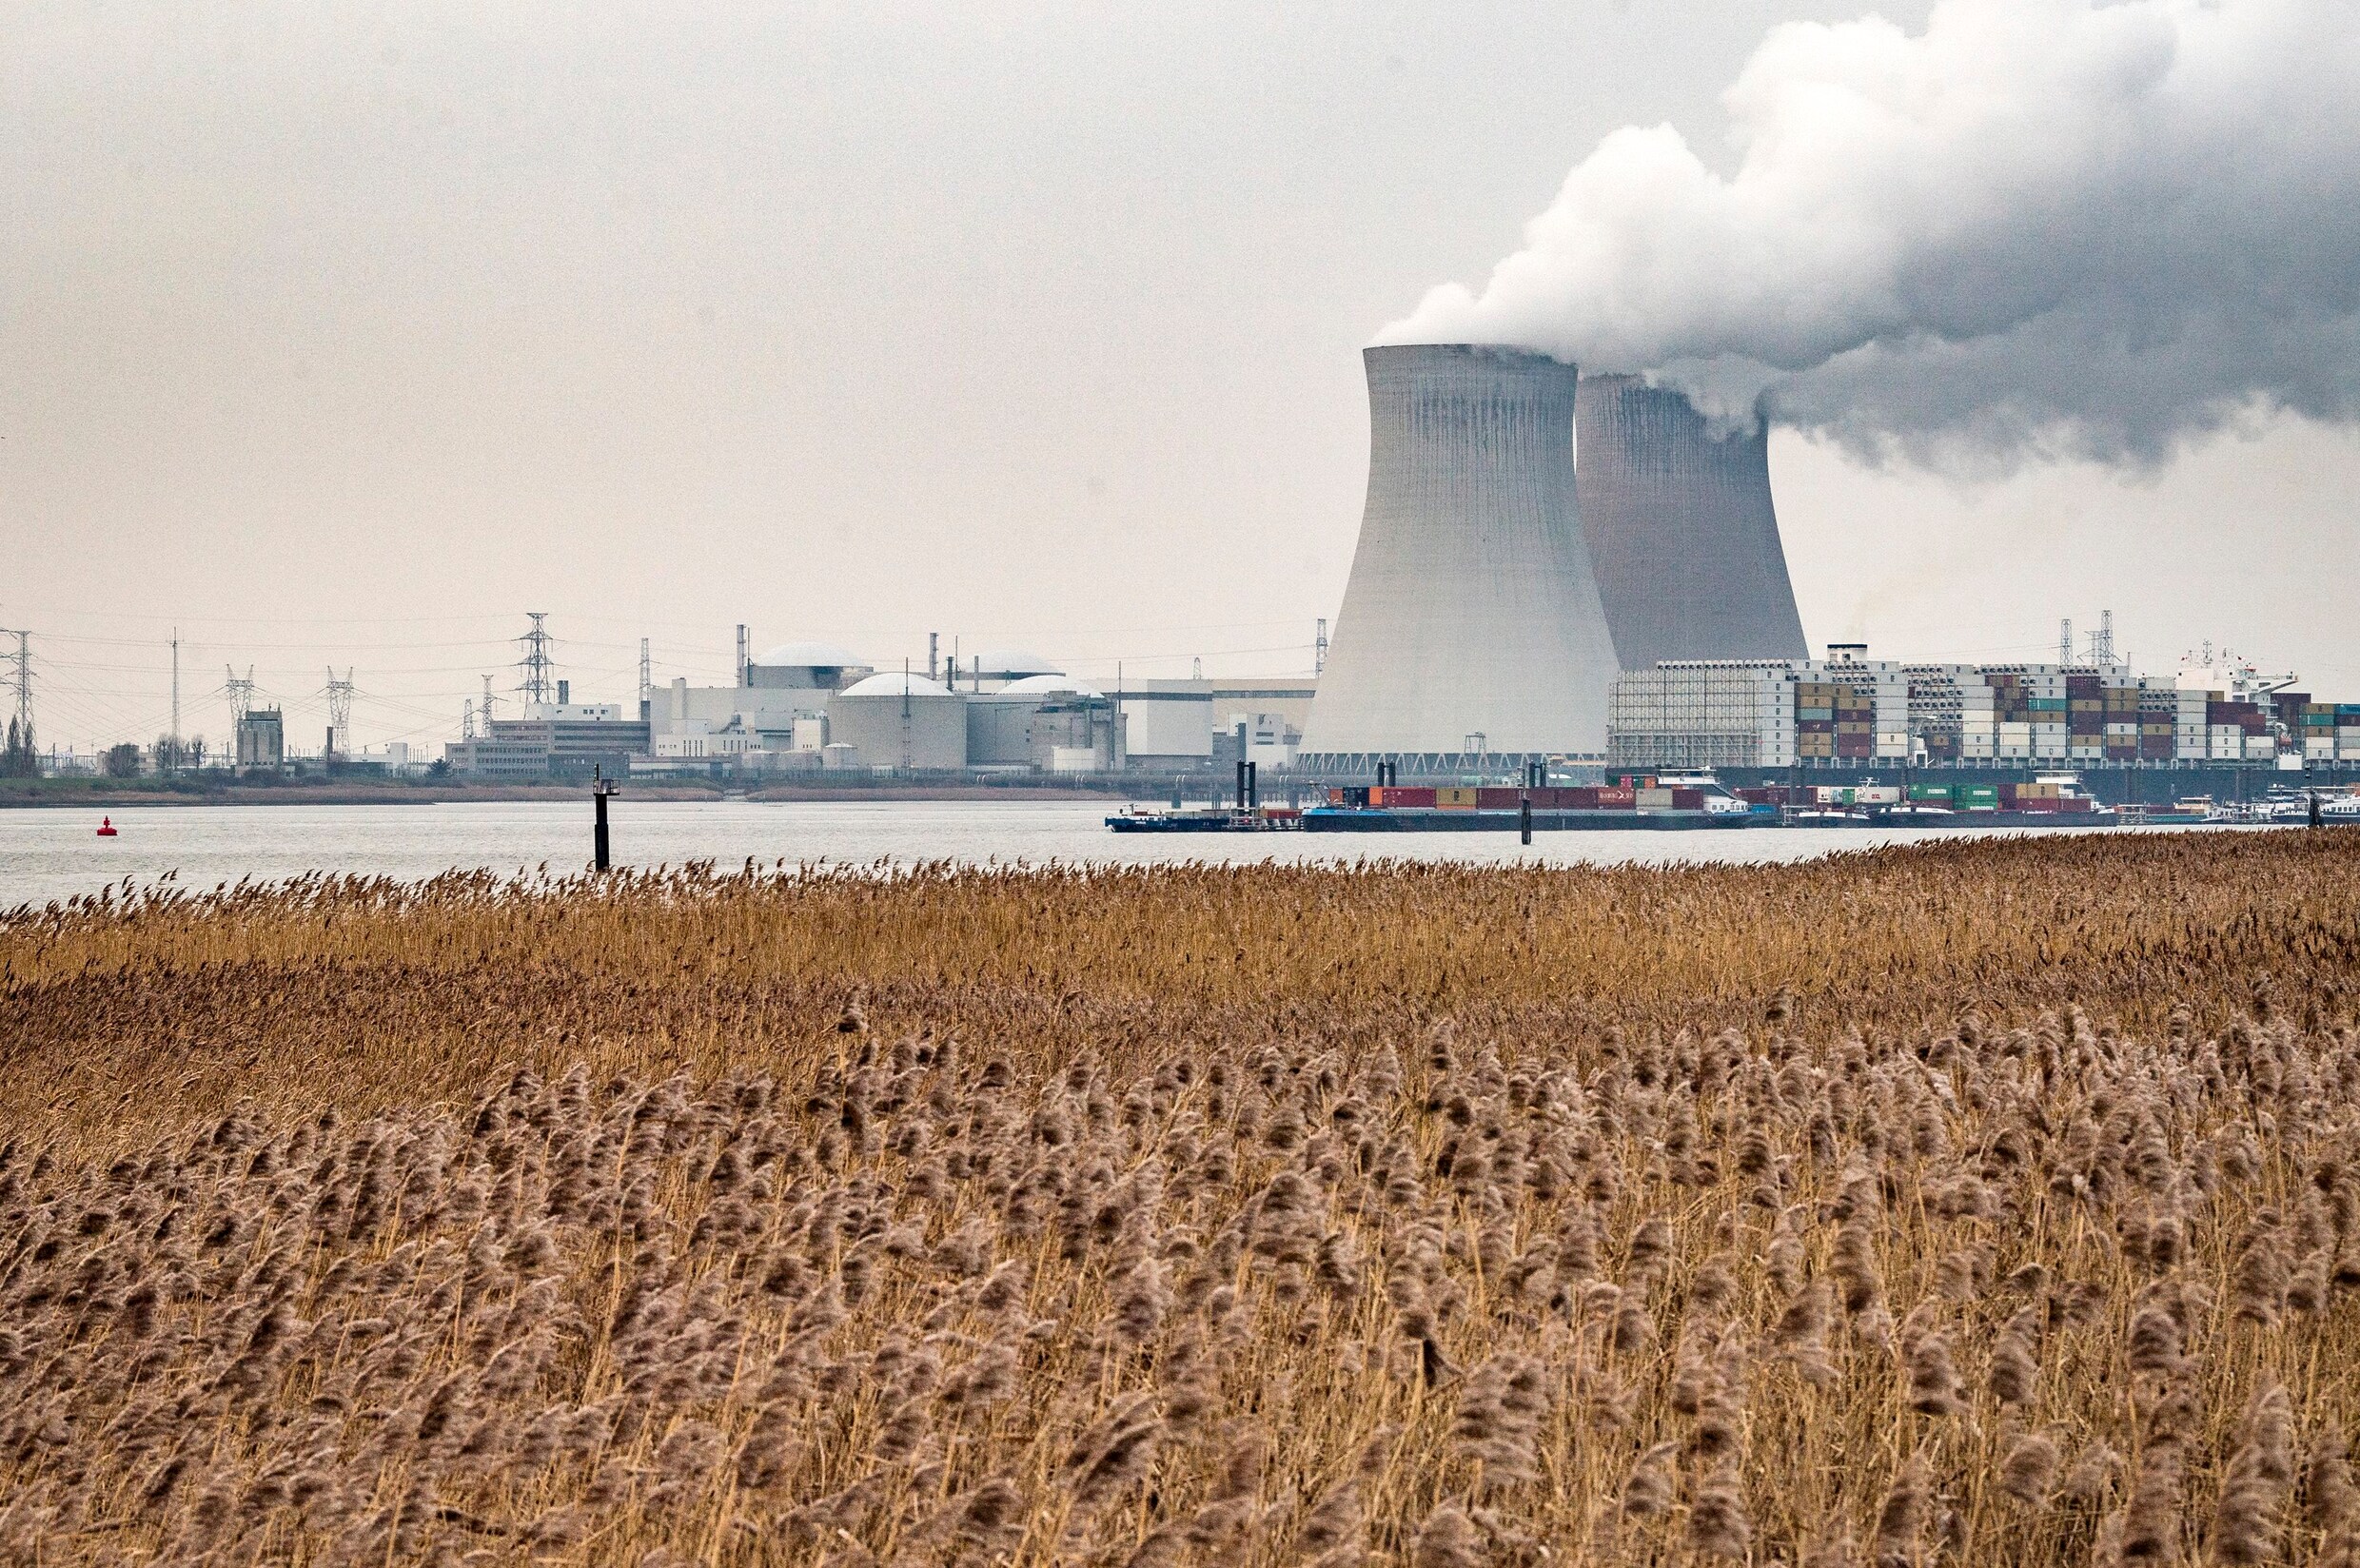 Verlenging kerncentrales geen taboe meer voor groenen: ‘Met open blik naar kernuitstap kijken’